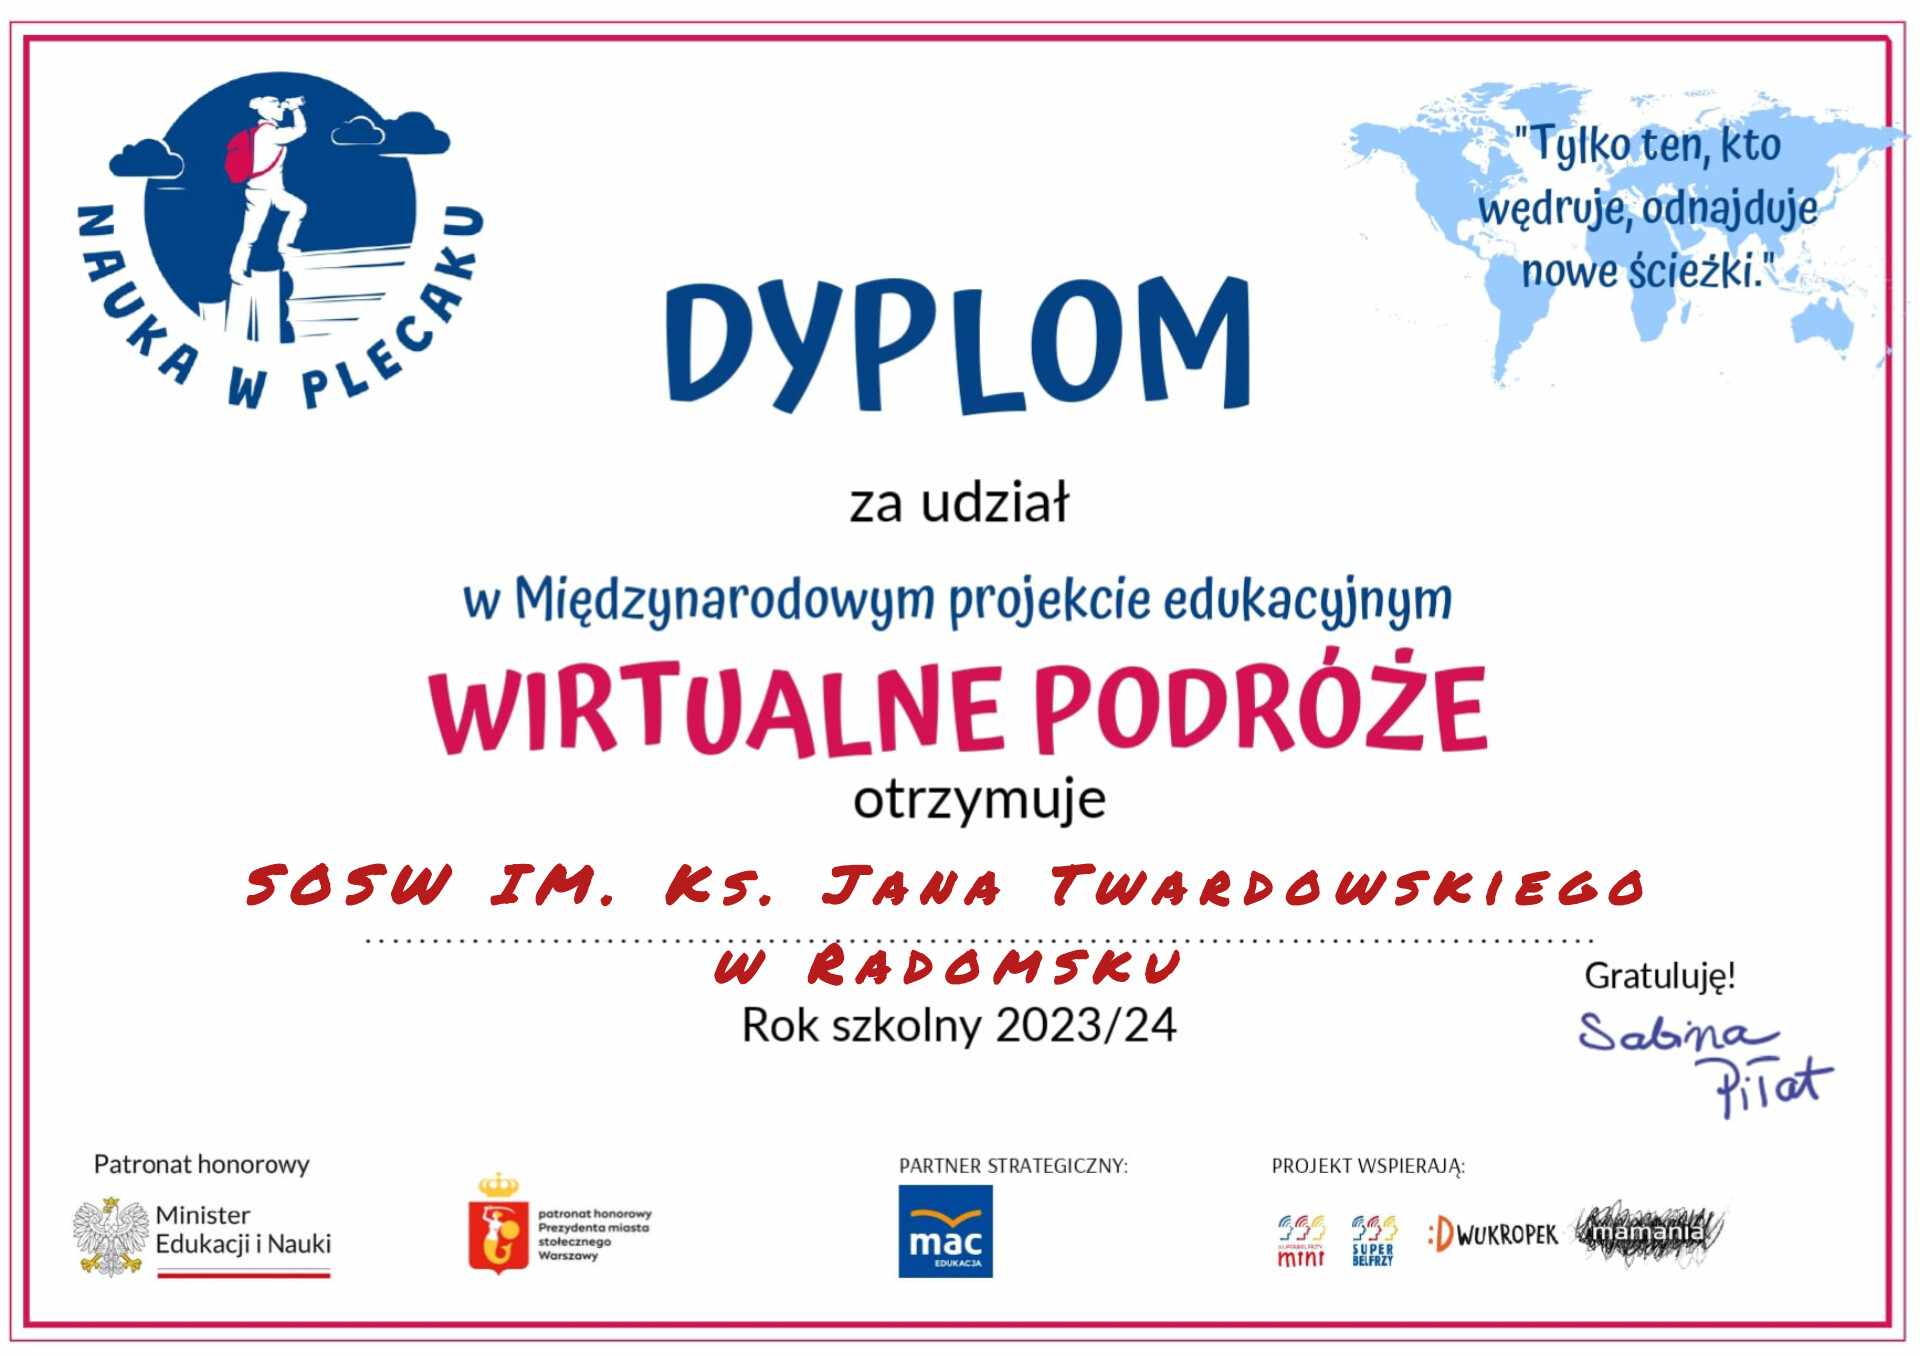 Dyplom za udział w Międzynarodowym Projekcie Edukacyjnym "Wirtualne Podróże" 